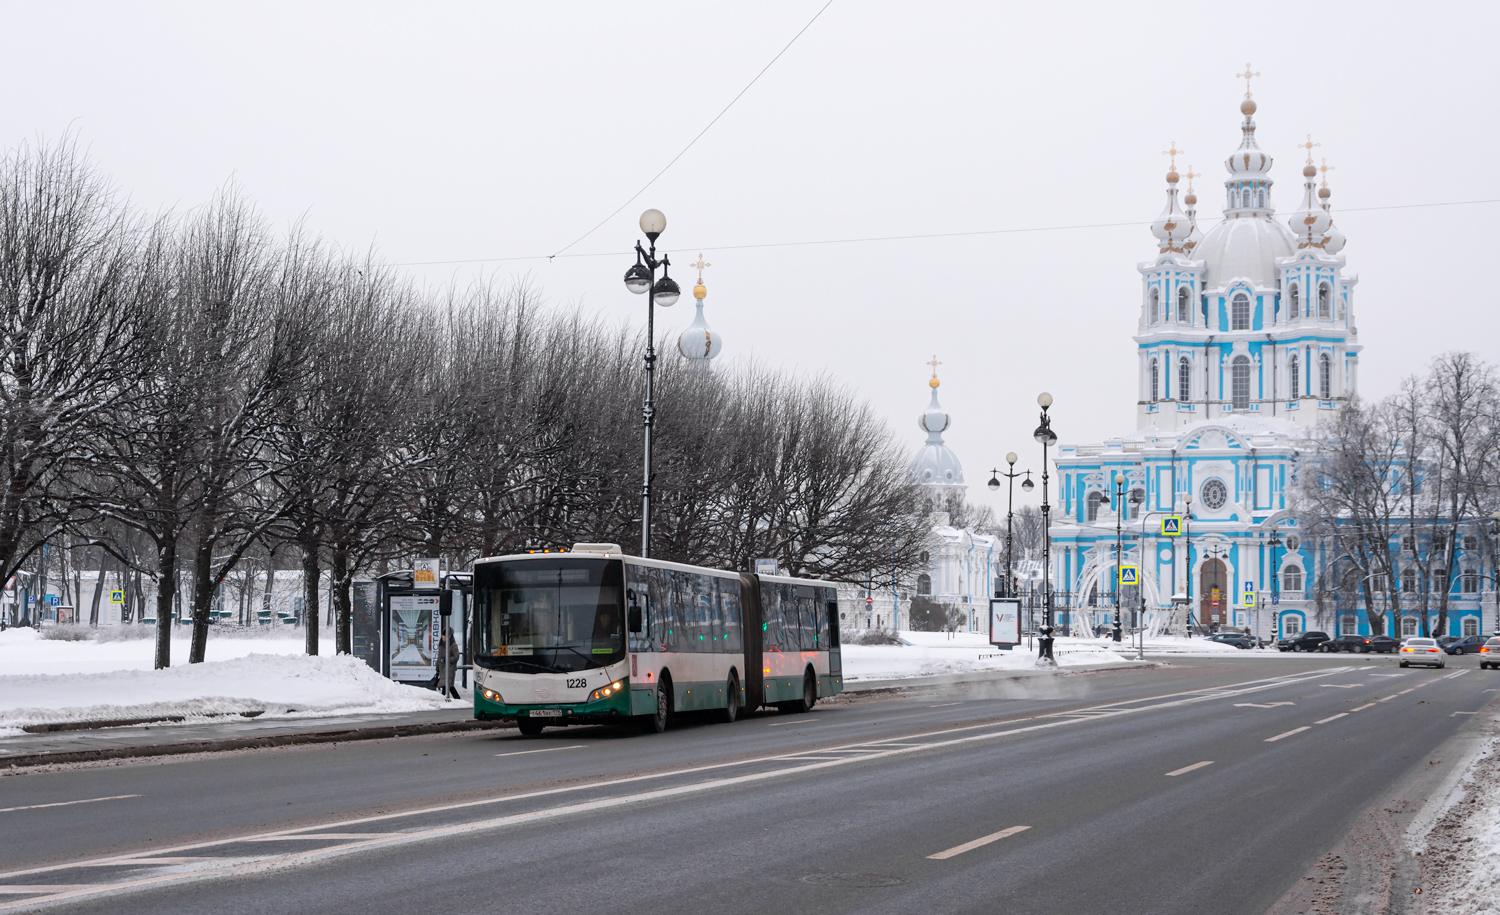 Saint-Pétersbourg, Volgabus-6271.00 # 1228